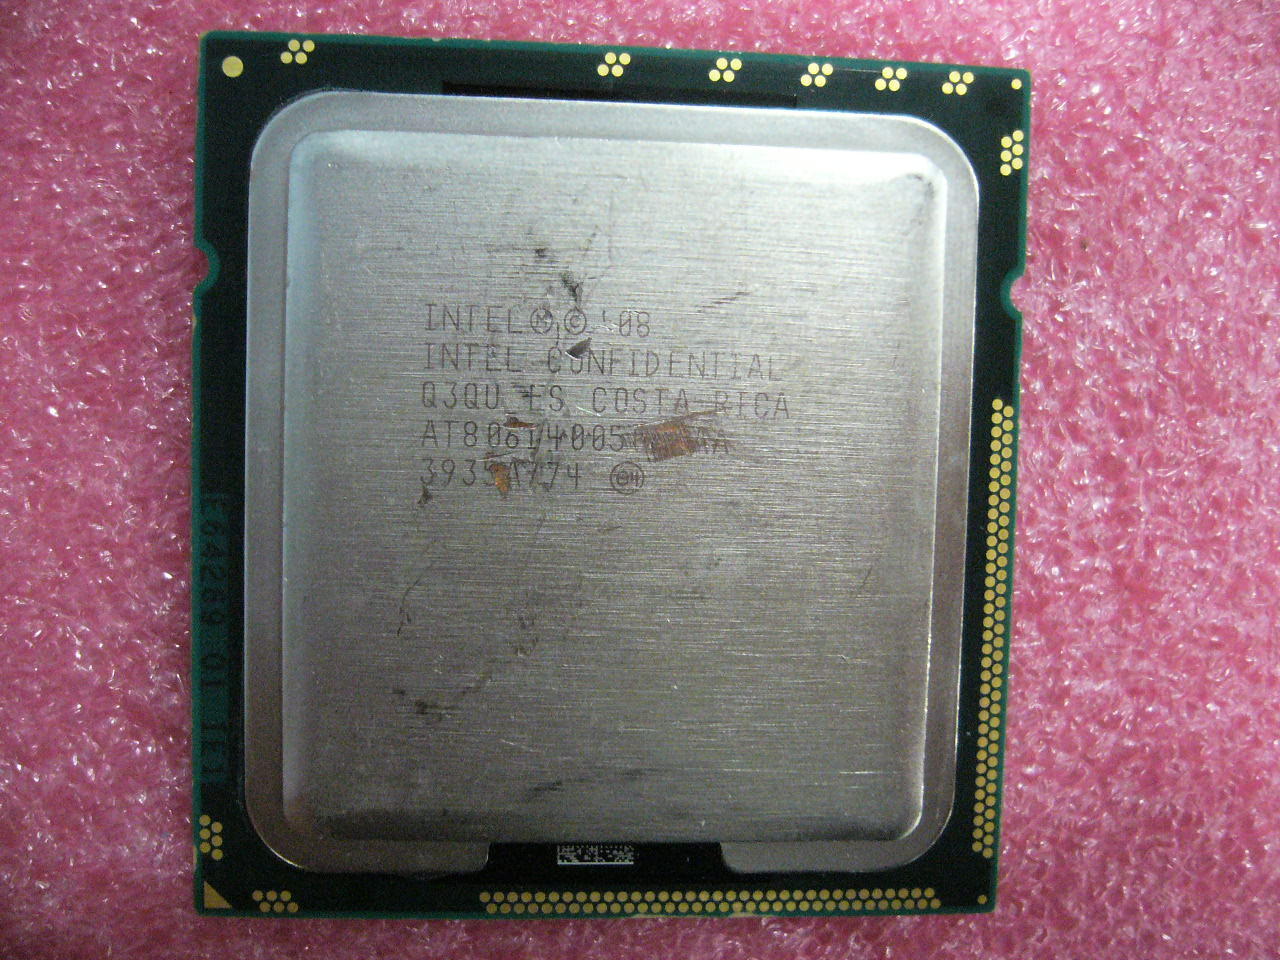 QTY 1x INTEL Quad-Cores ES CPU 2.8GHZ/12MB LGA1366 Q3QU A0 TDP 95W